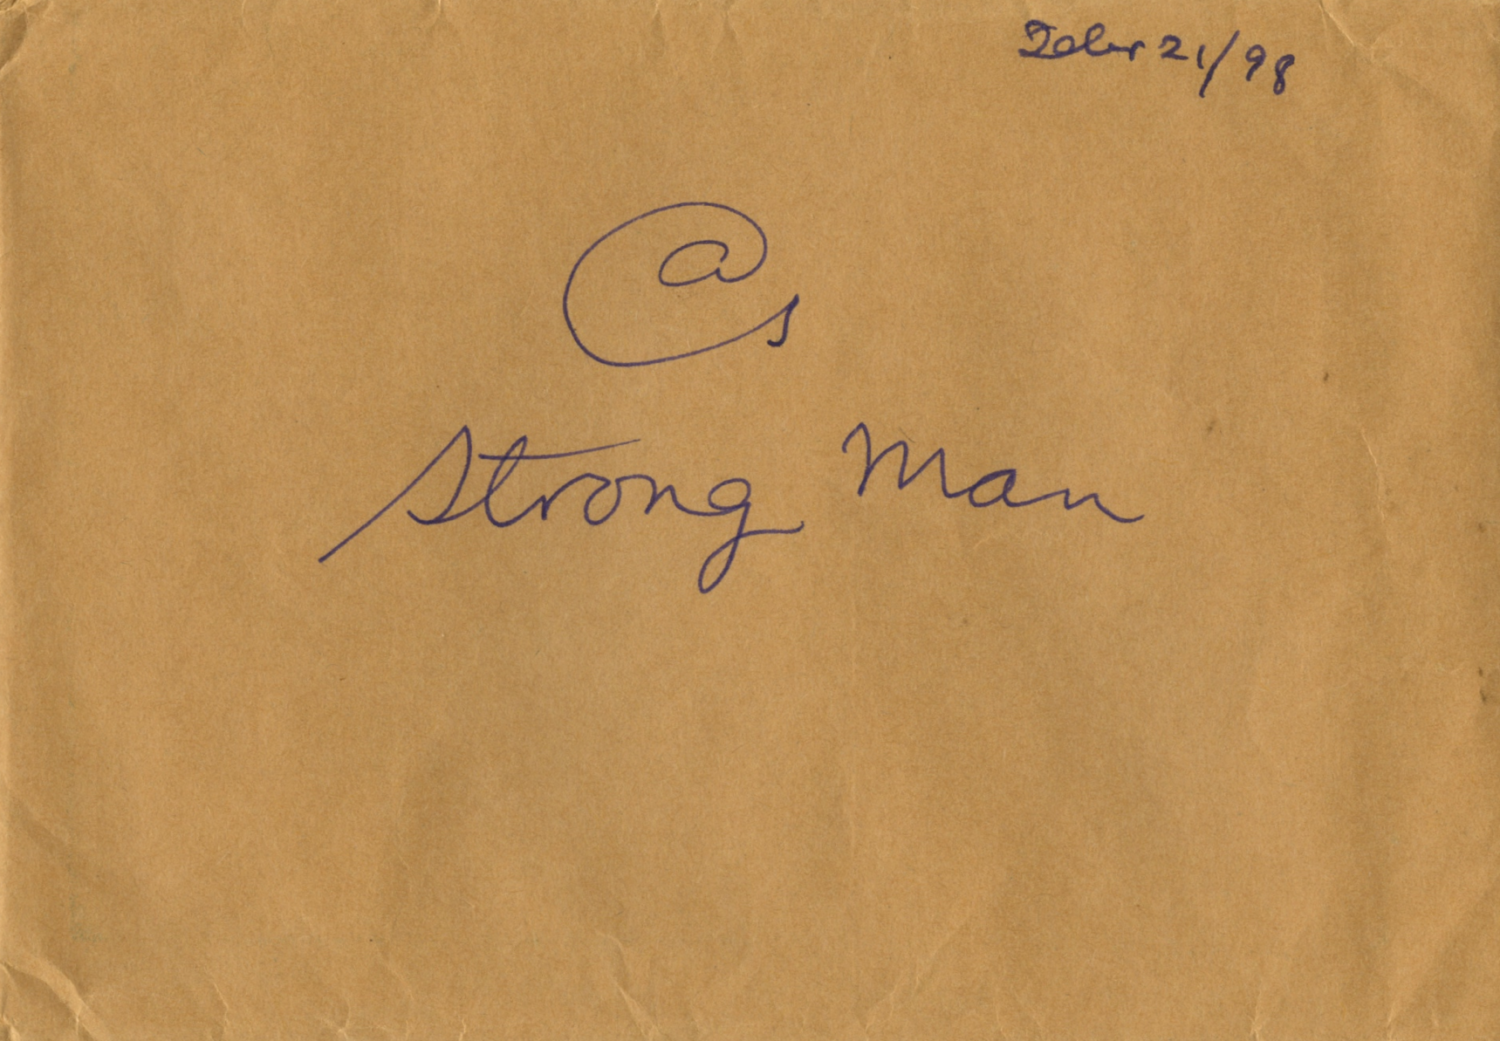 Strong man [Febr 21 ’98]